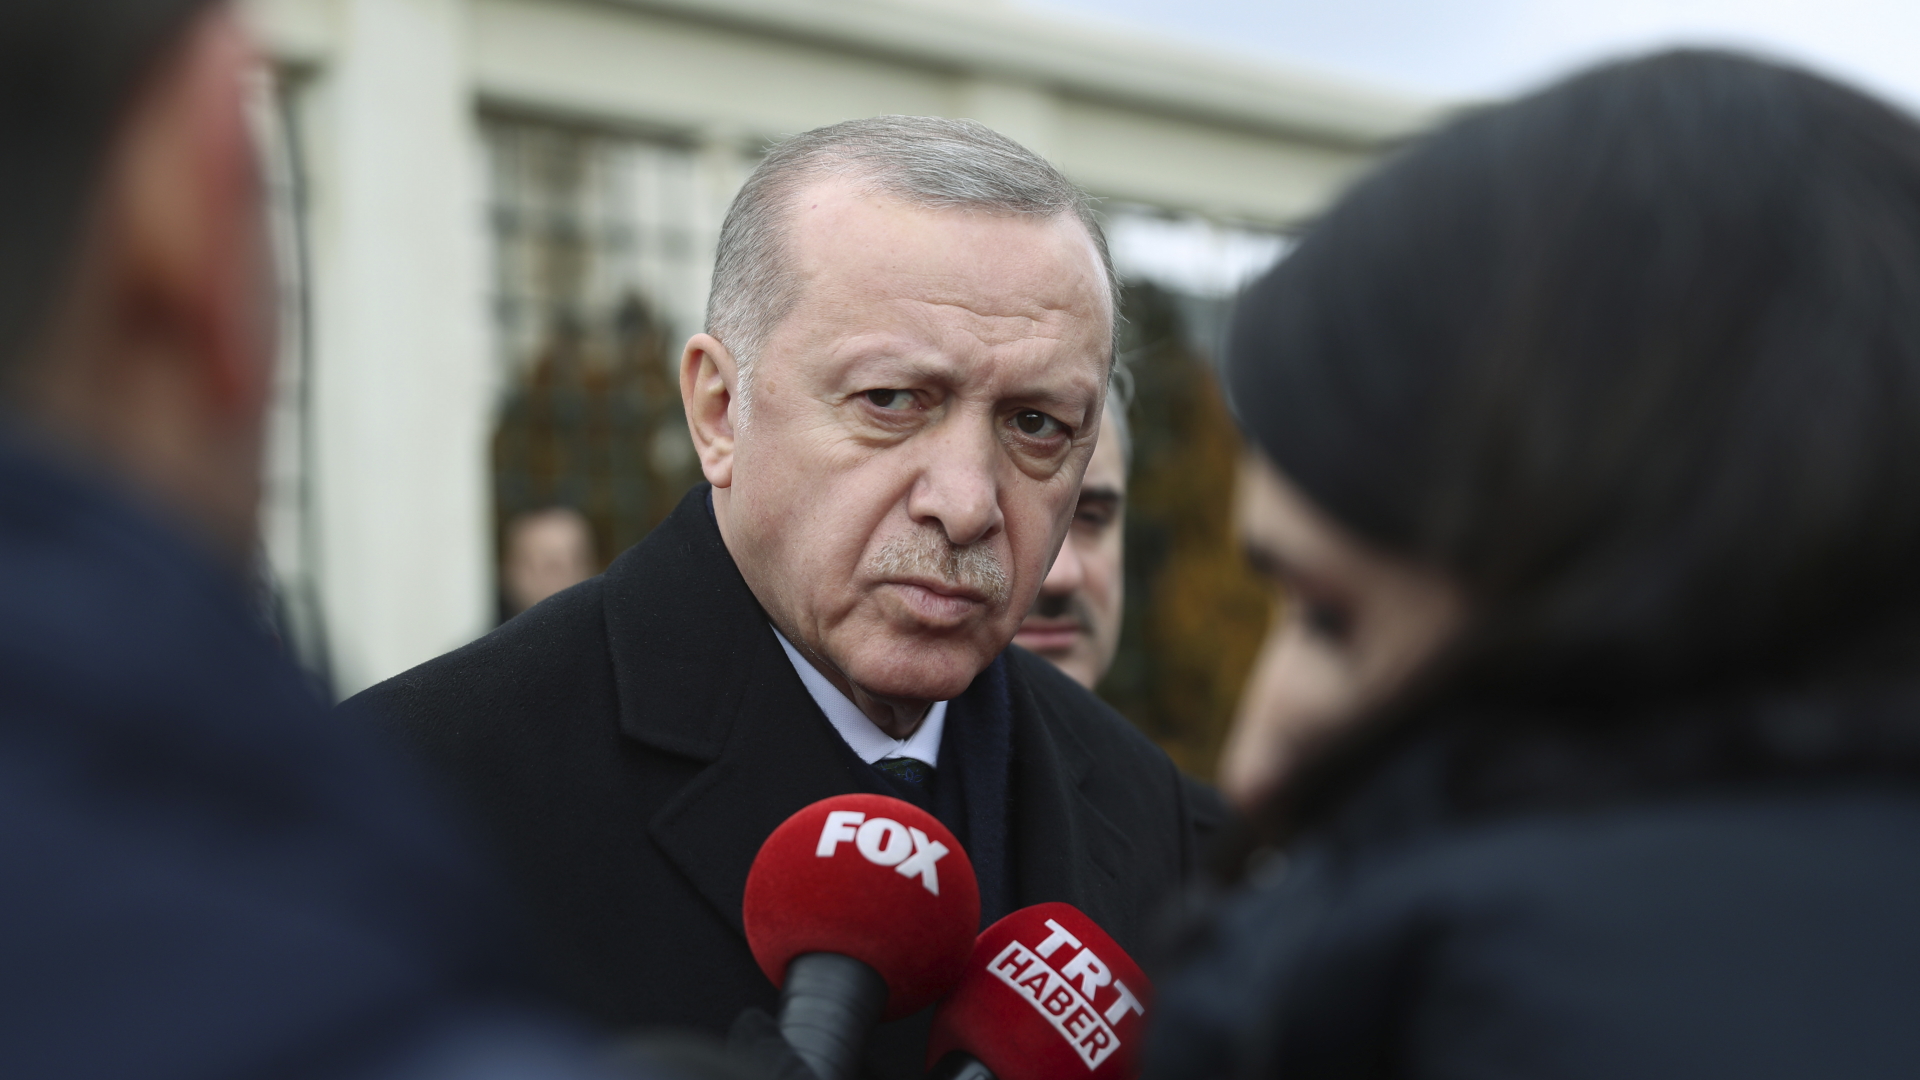 Recep Tayyip Erdogan, Präsident der Türkei, tritt nach einem Freitagsgebet vor die Presse. (Archivbild) | dpa